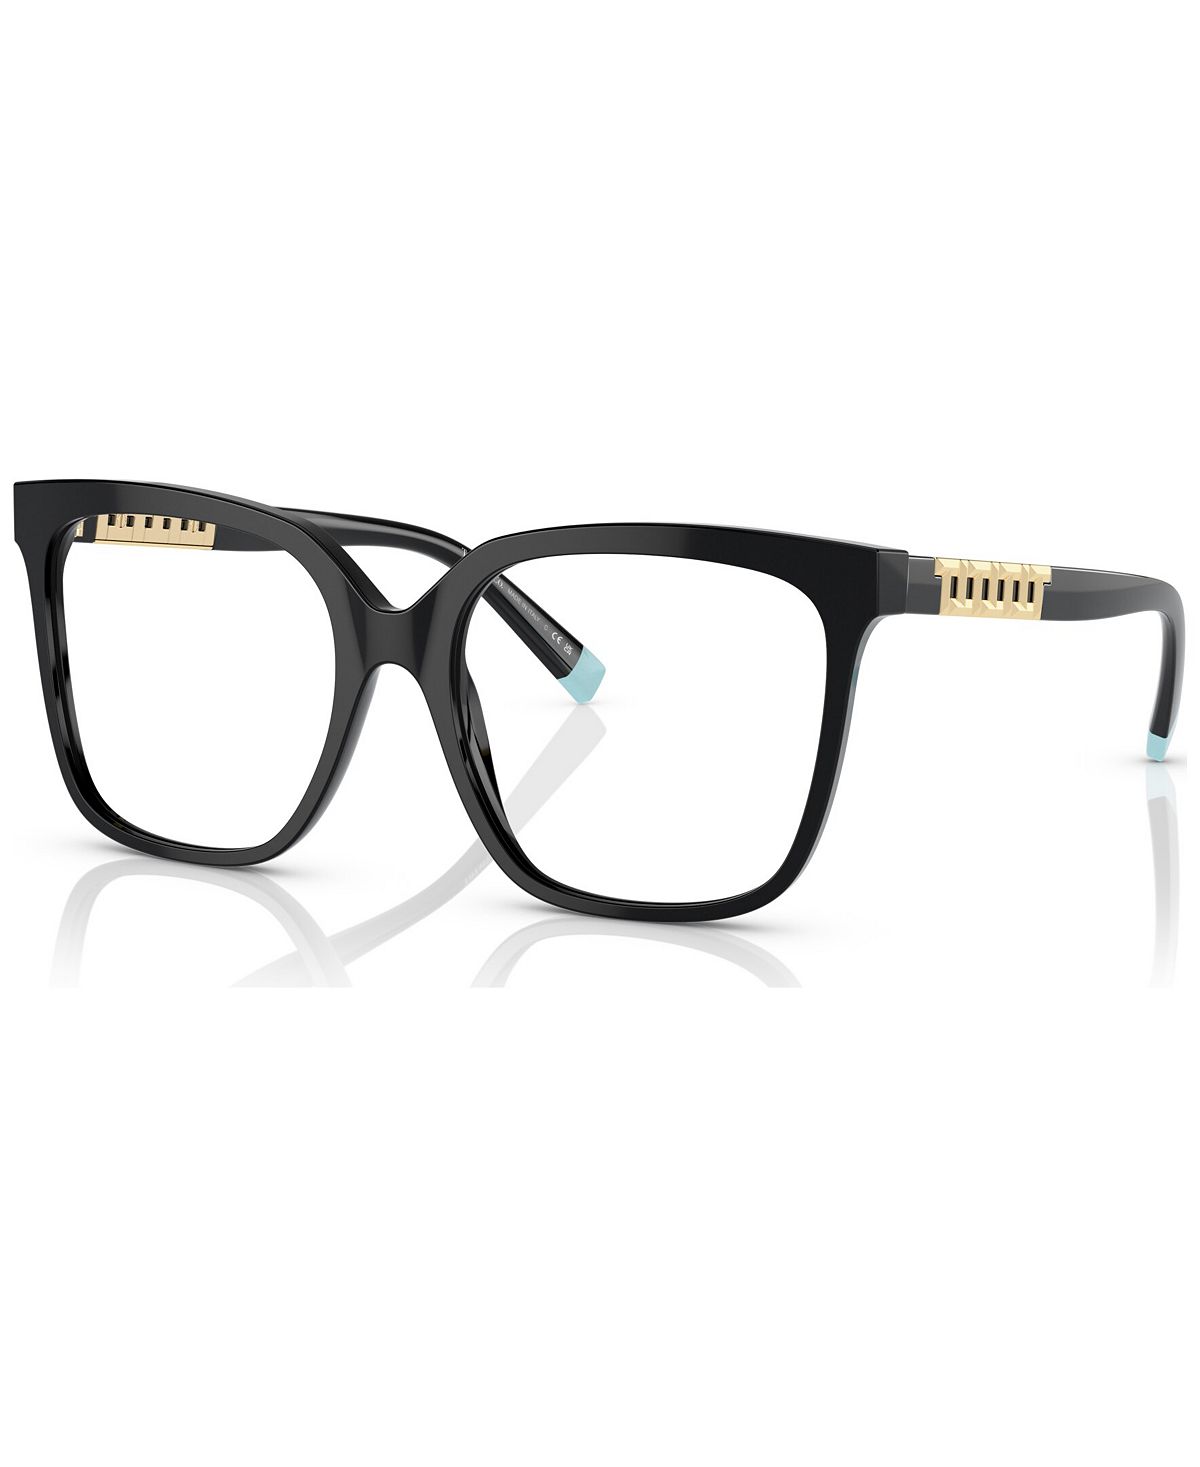 Женские квадратные очки, TF2227 52 Tiffany & Co., черный